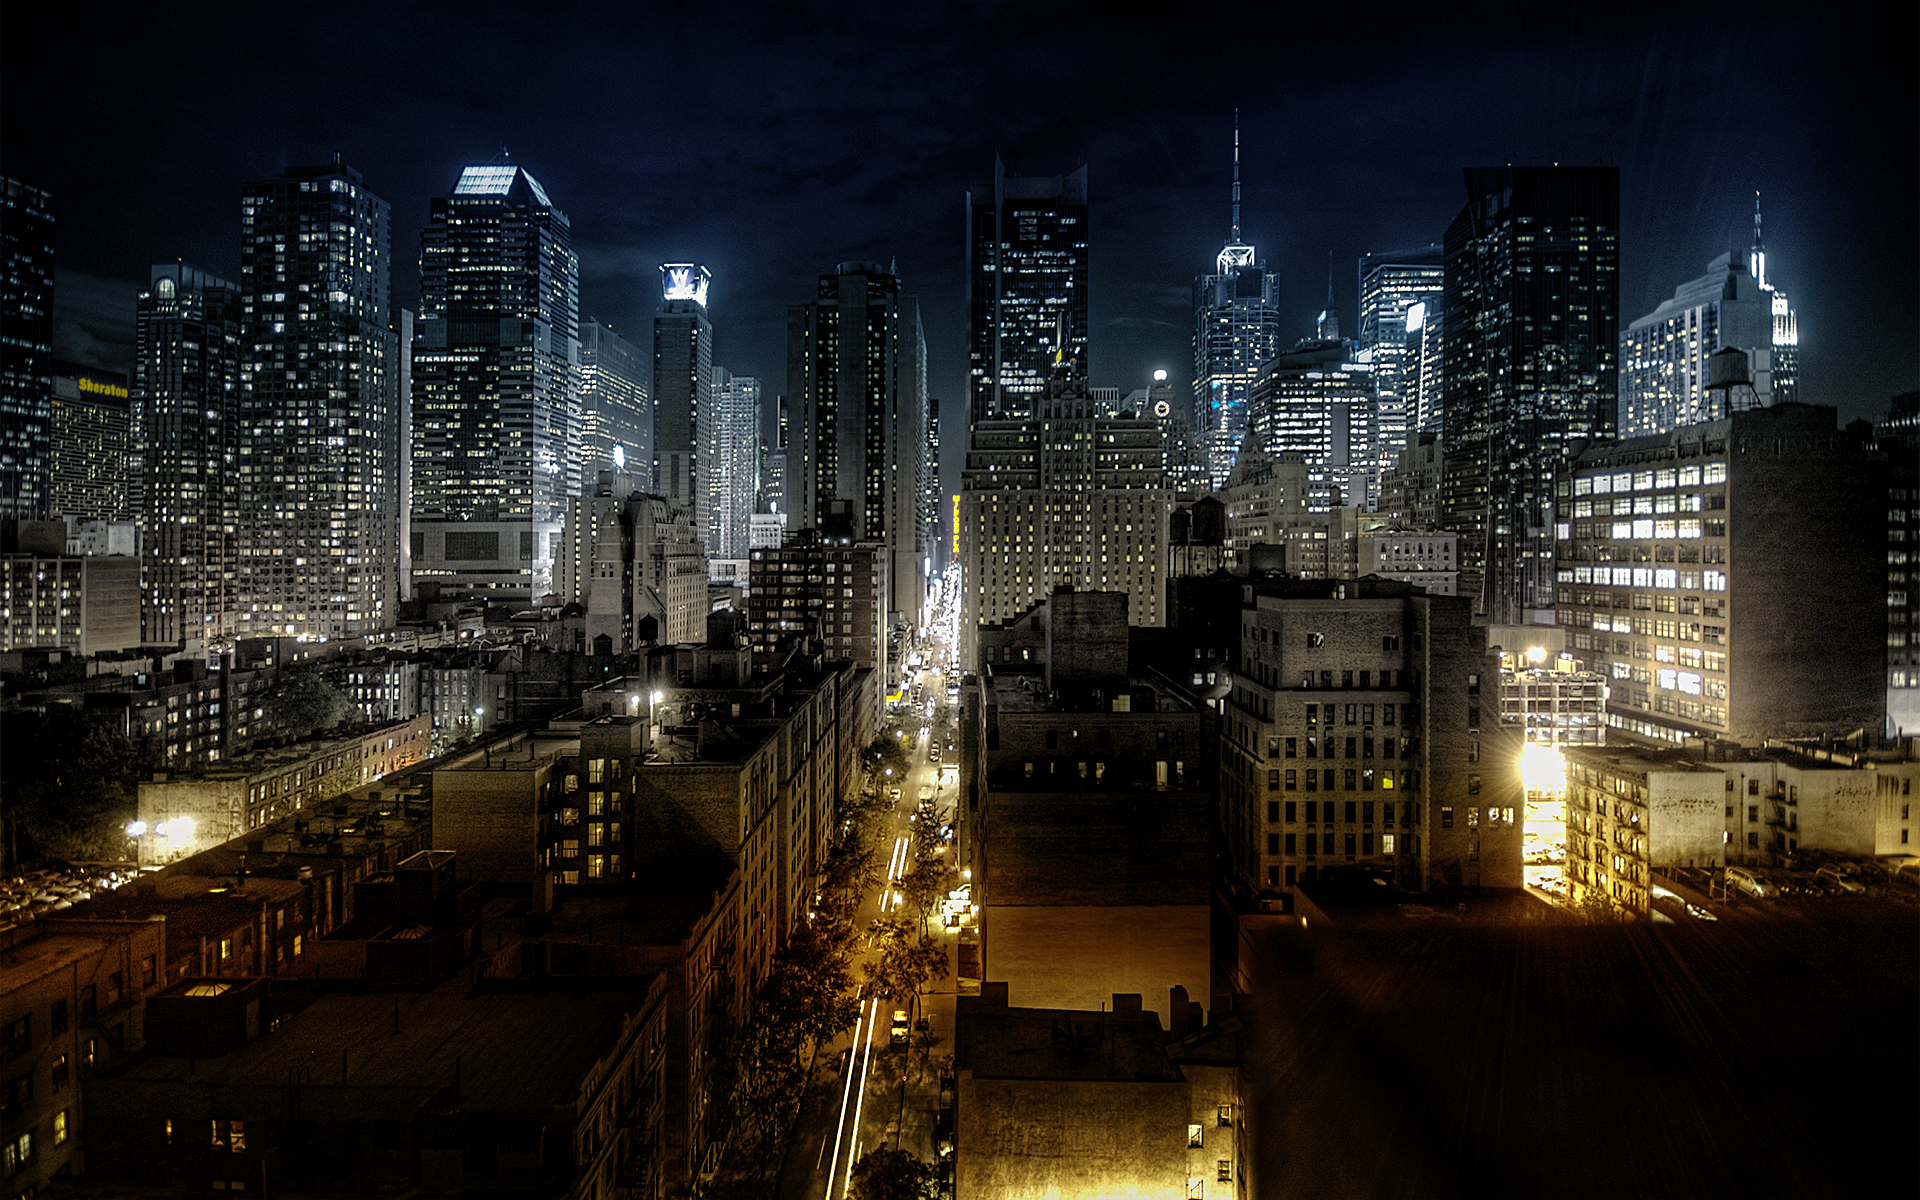 Ночной город и небоскребы